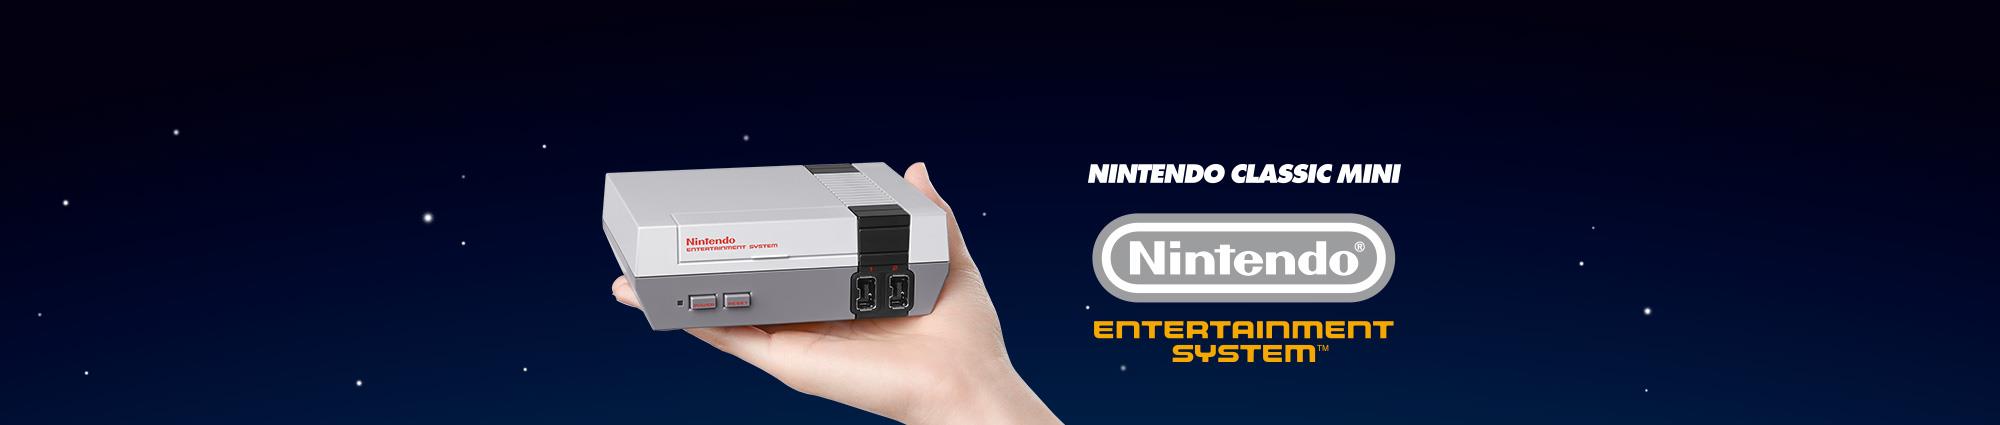 El Nintendo original volverá a las tiendas con 30 juegos clásicos incluidos